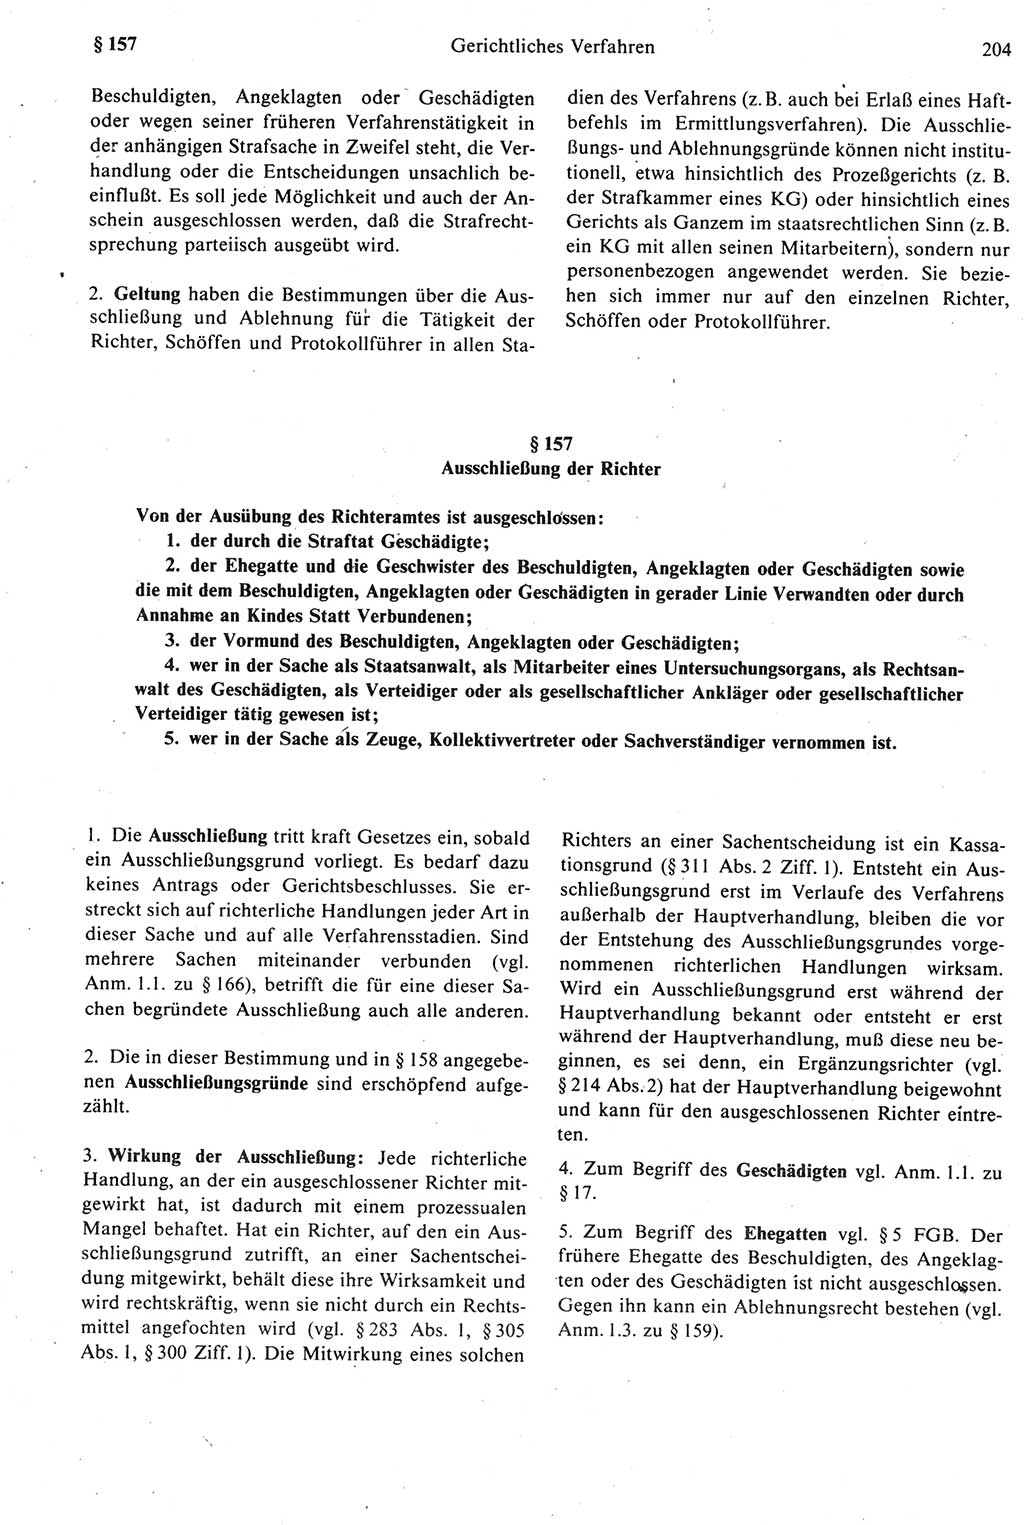 Strafprozeßrecht der DDR [Deutsche Demokratische Republik], Kommentar zur Strafprozeßordnung (StPO) 1987, Seite 204 (Strafprozeßr. DDR Komm. StPO 1987, S. 204)